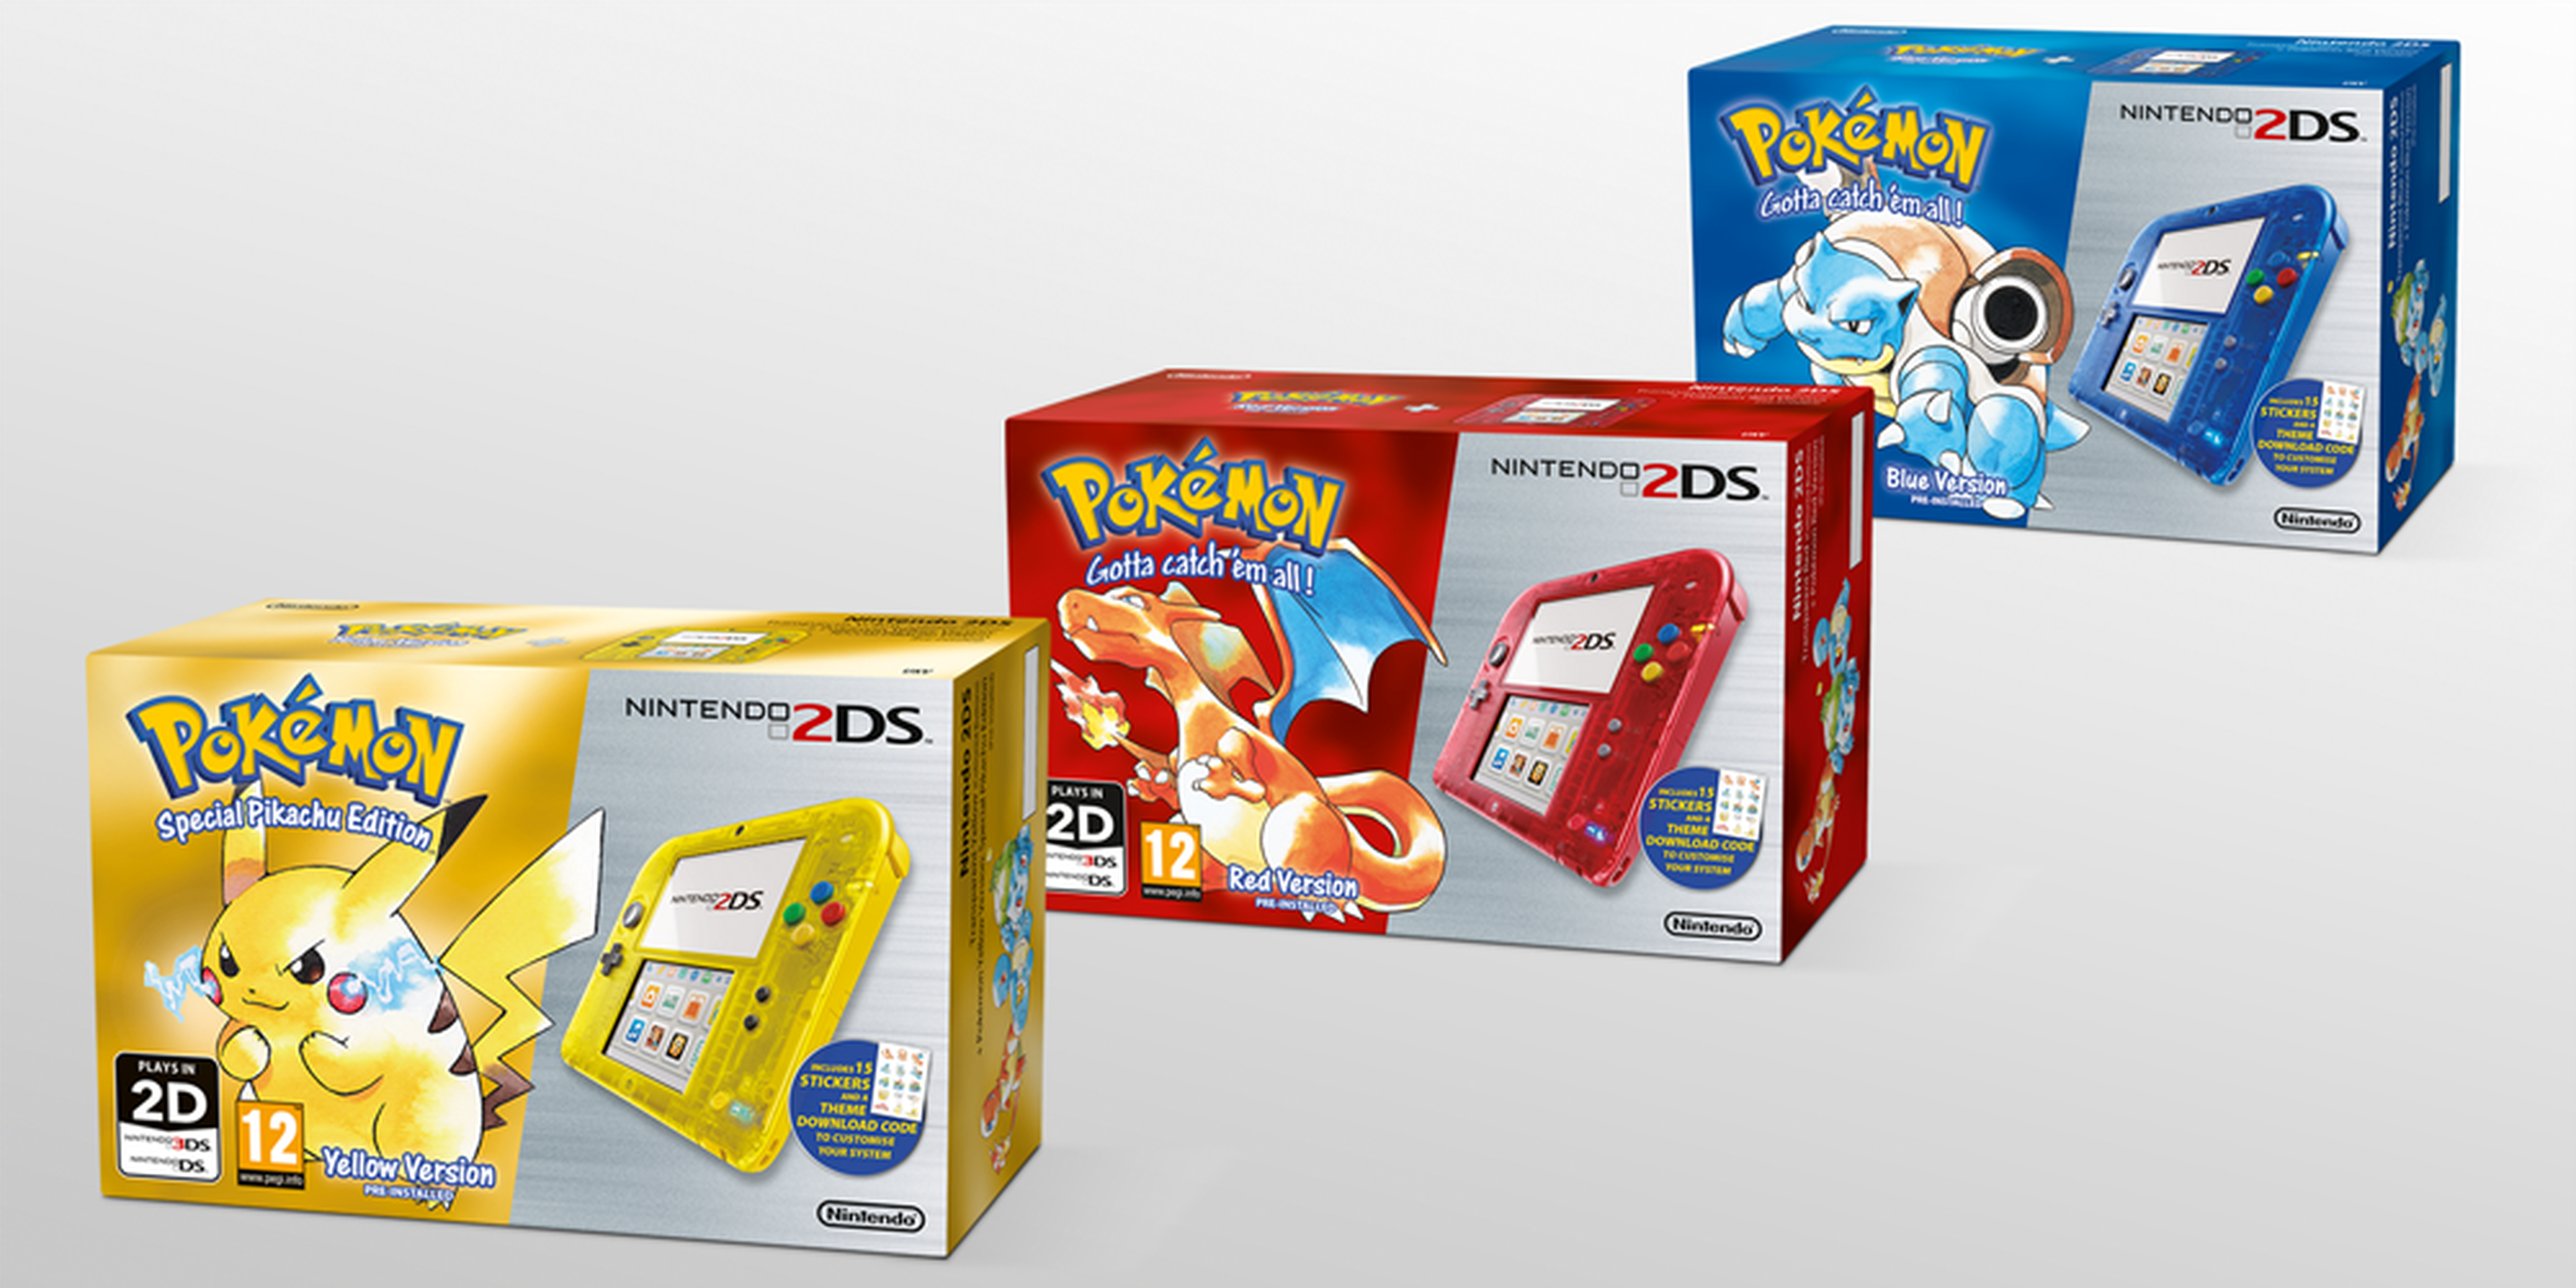 Pokémon celebrará su 20 aniversario con nuevas ediciones de Nintendo 2DS